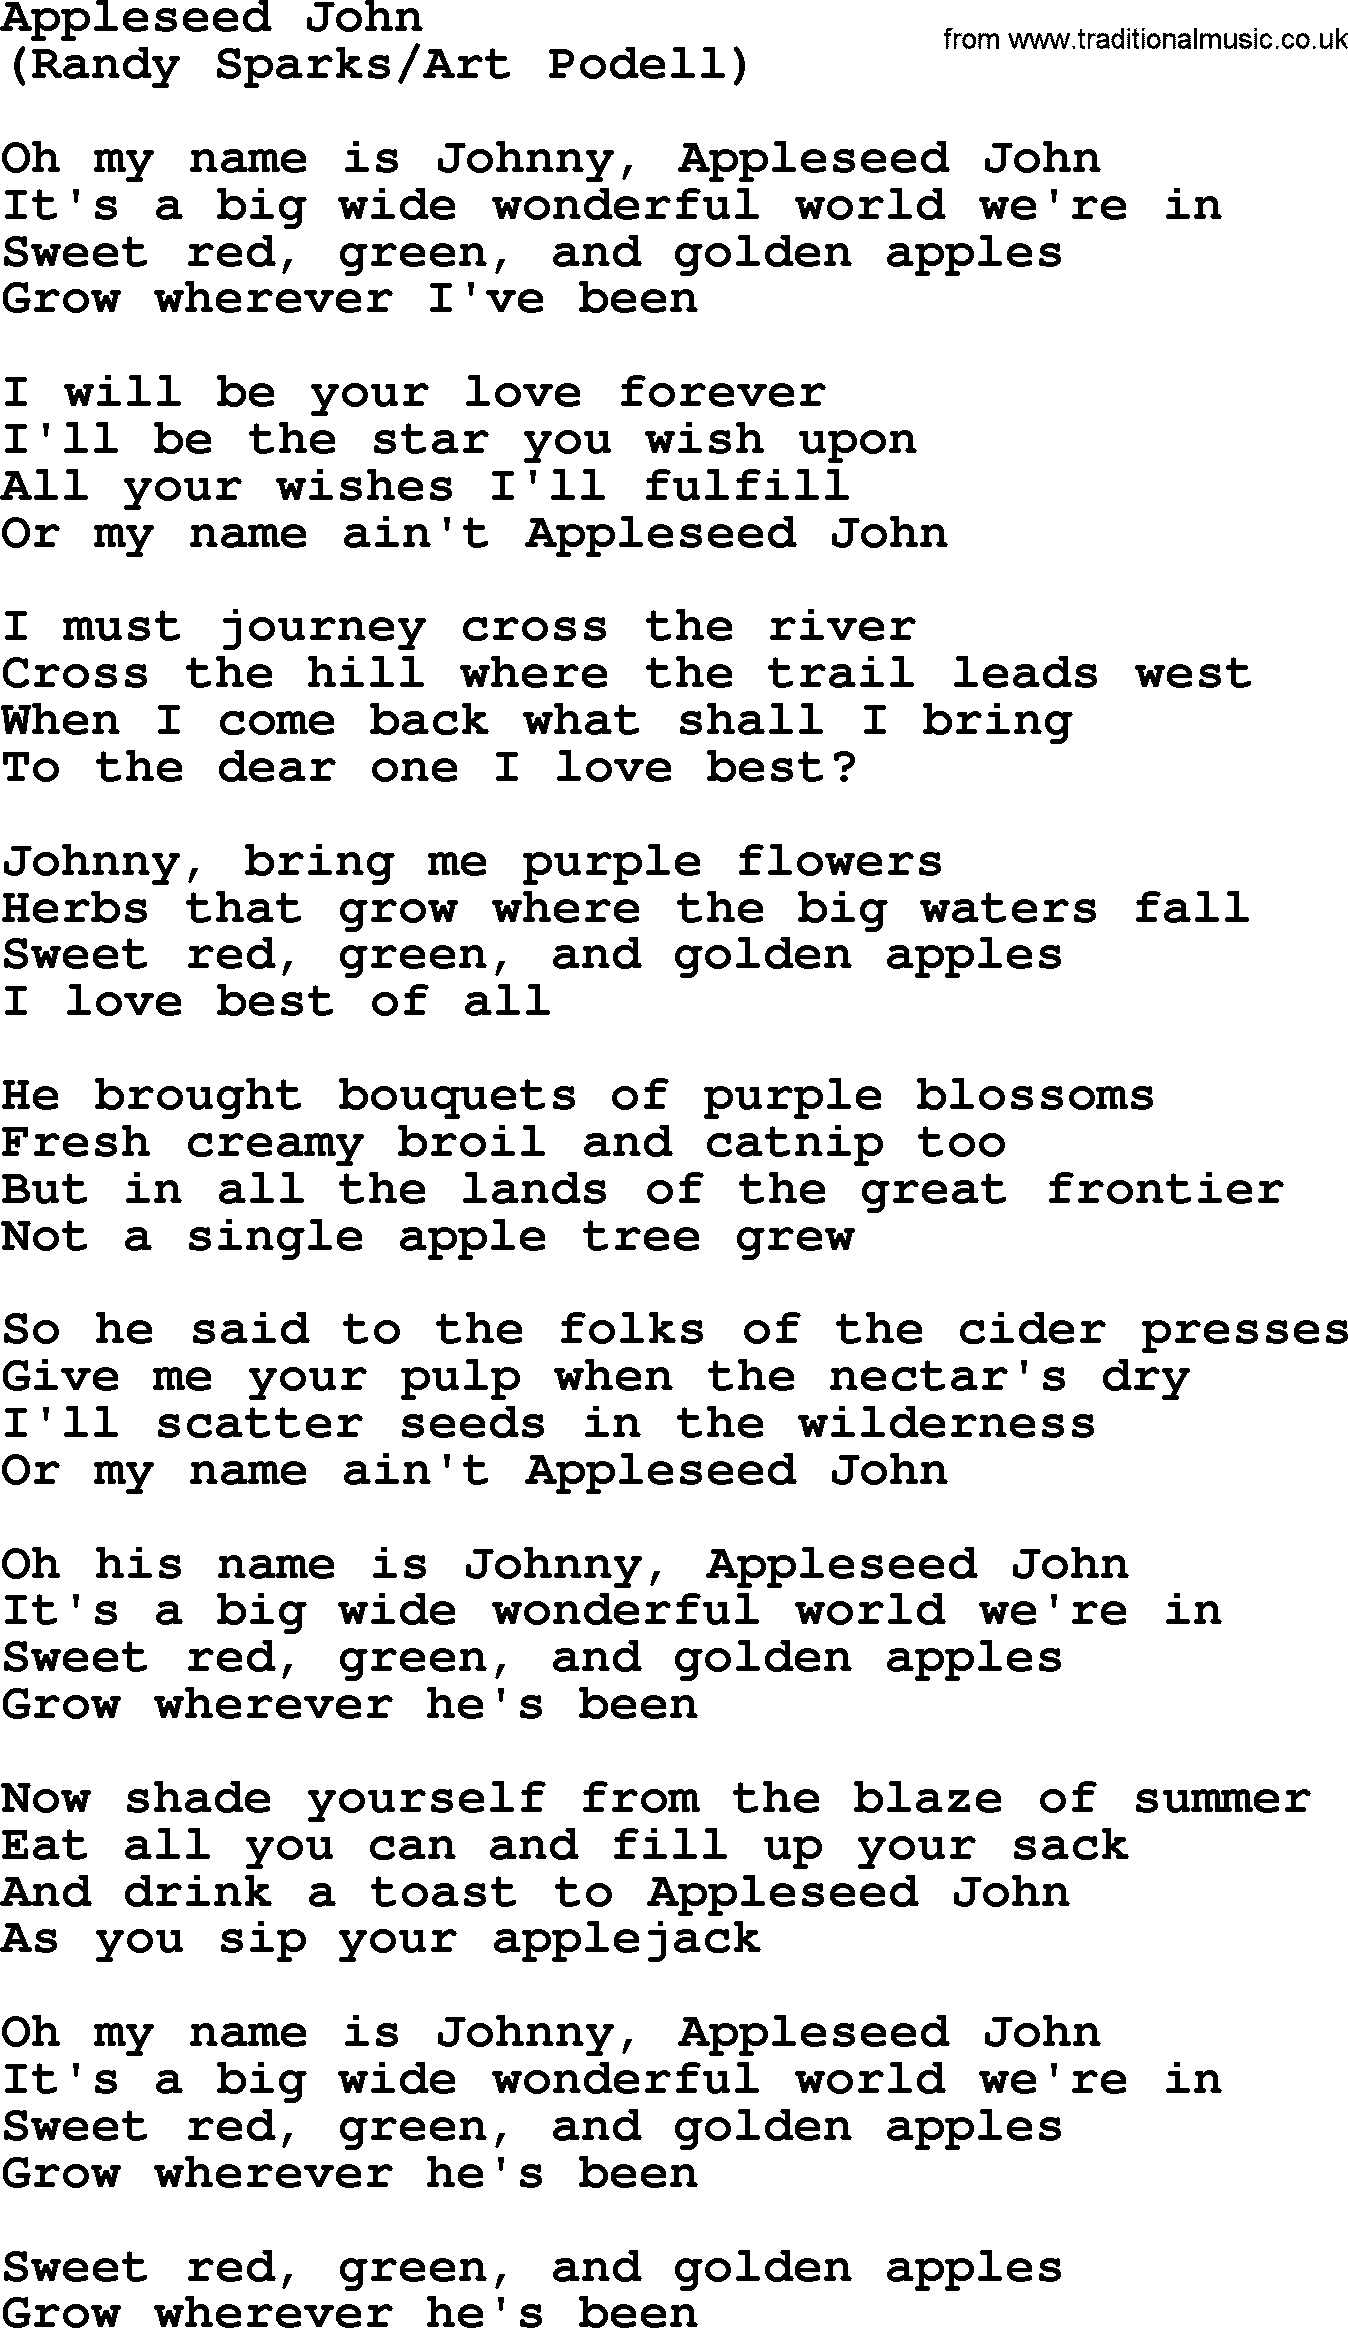 The Byrds song Appleseed John, lyrics